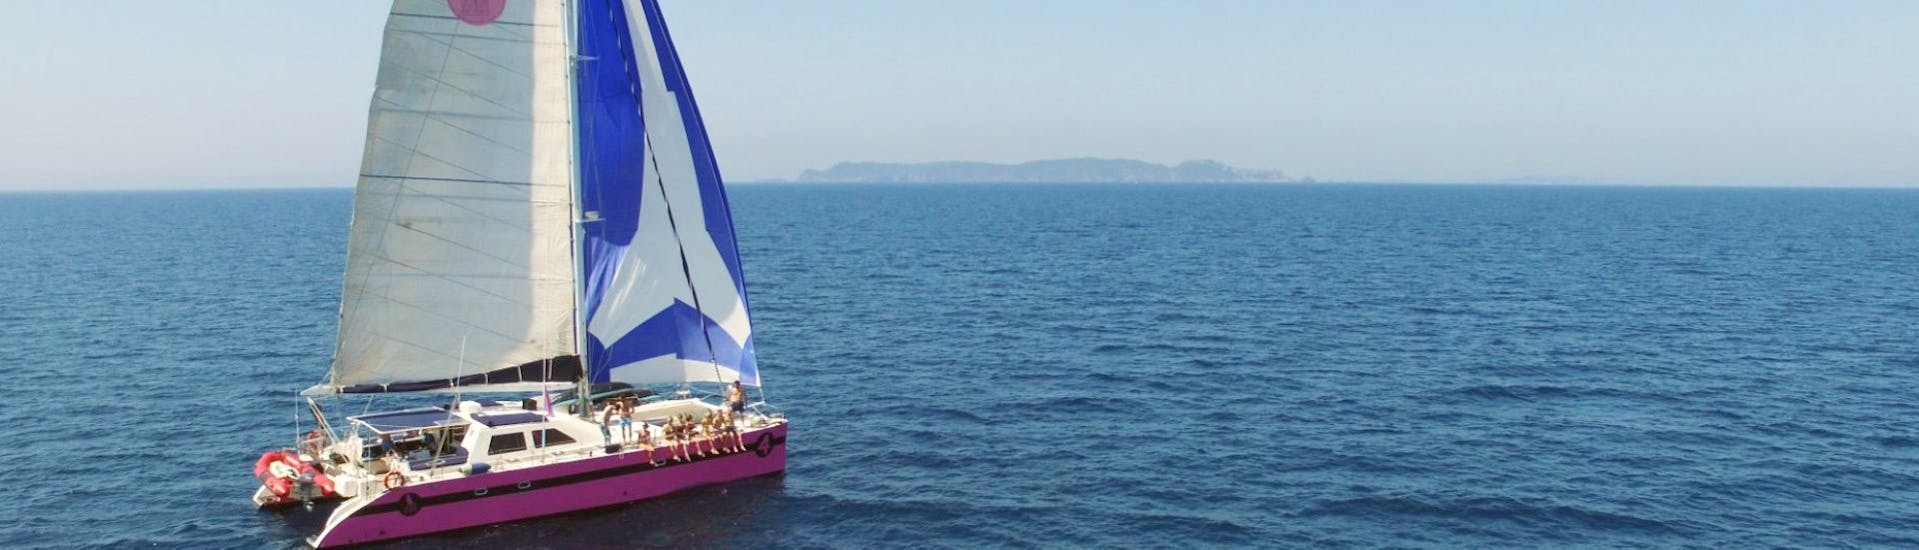 Vue lors de la Balade en catamaran dans le golfe du Morbihan avec Caseneuve Maxi Catamaran.